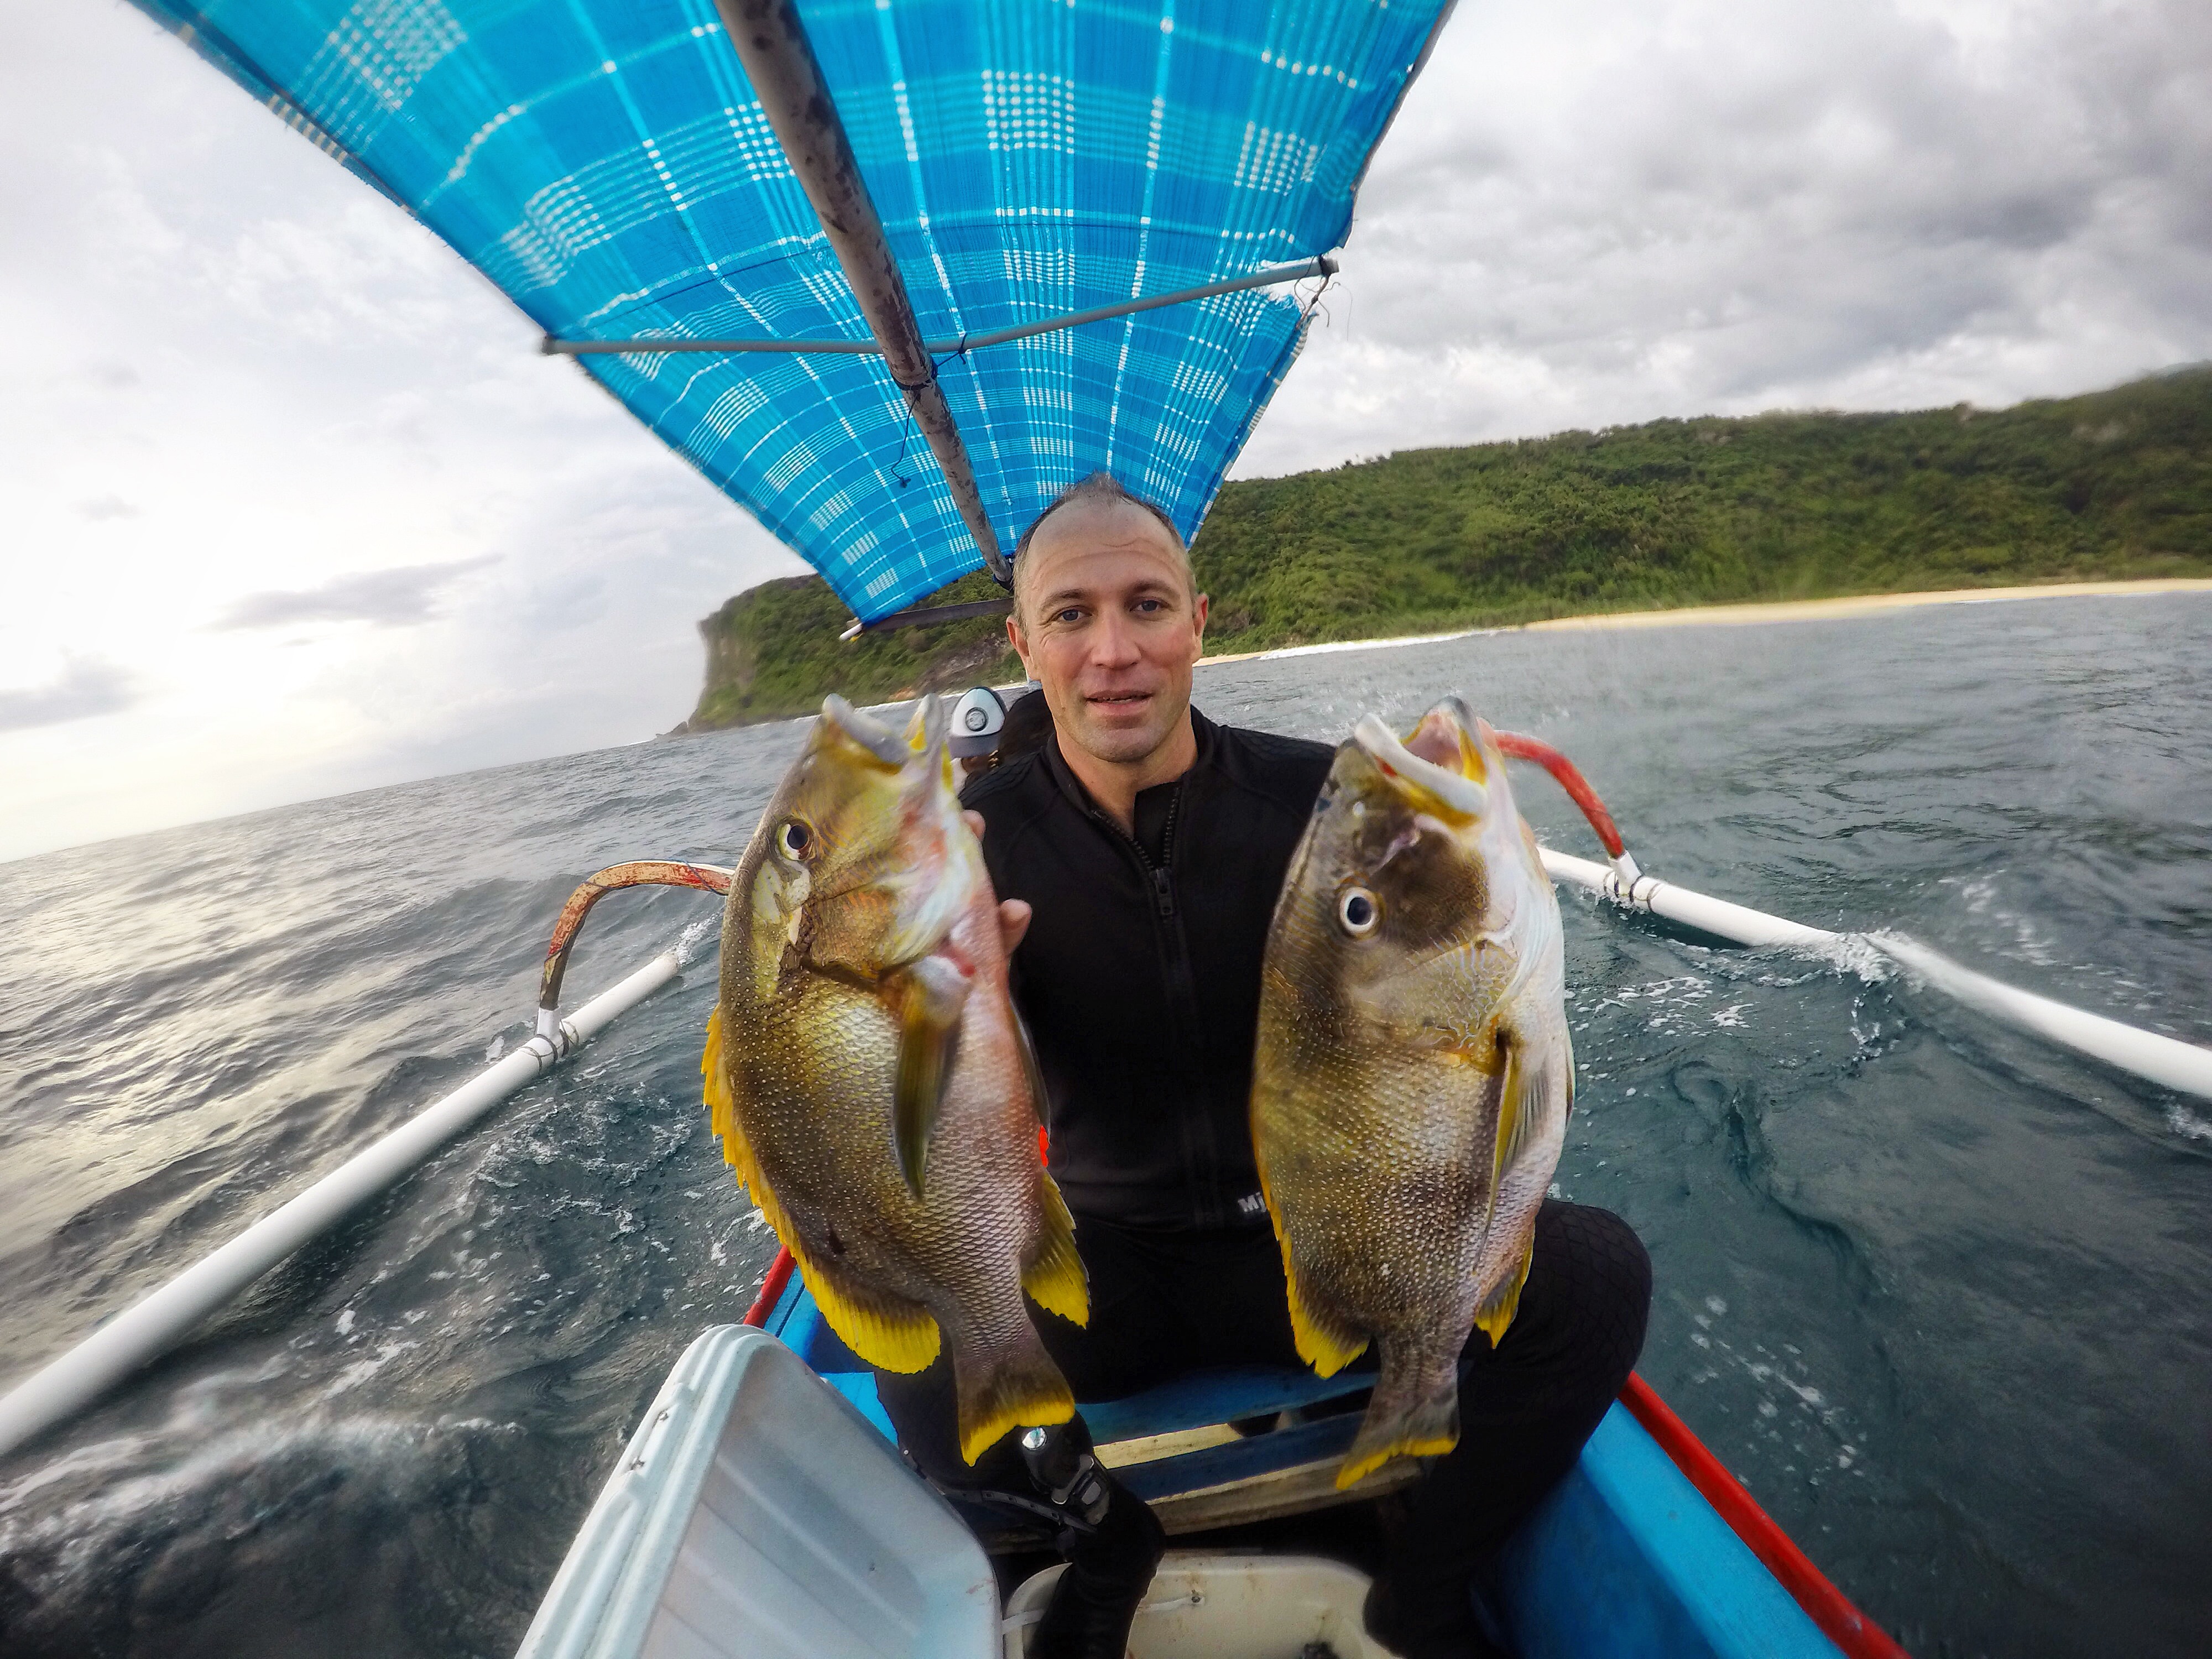 Bali Spearfishing Maori Seaperch